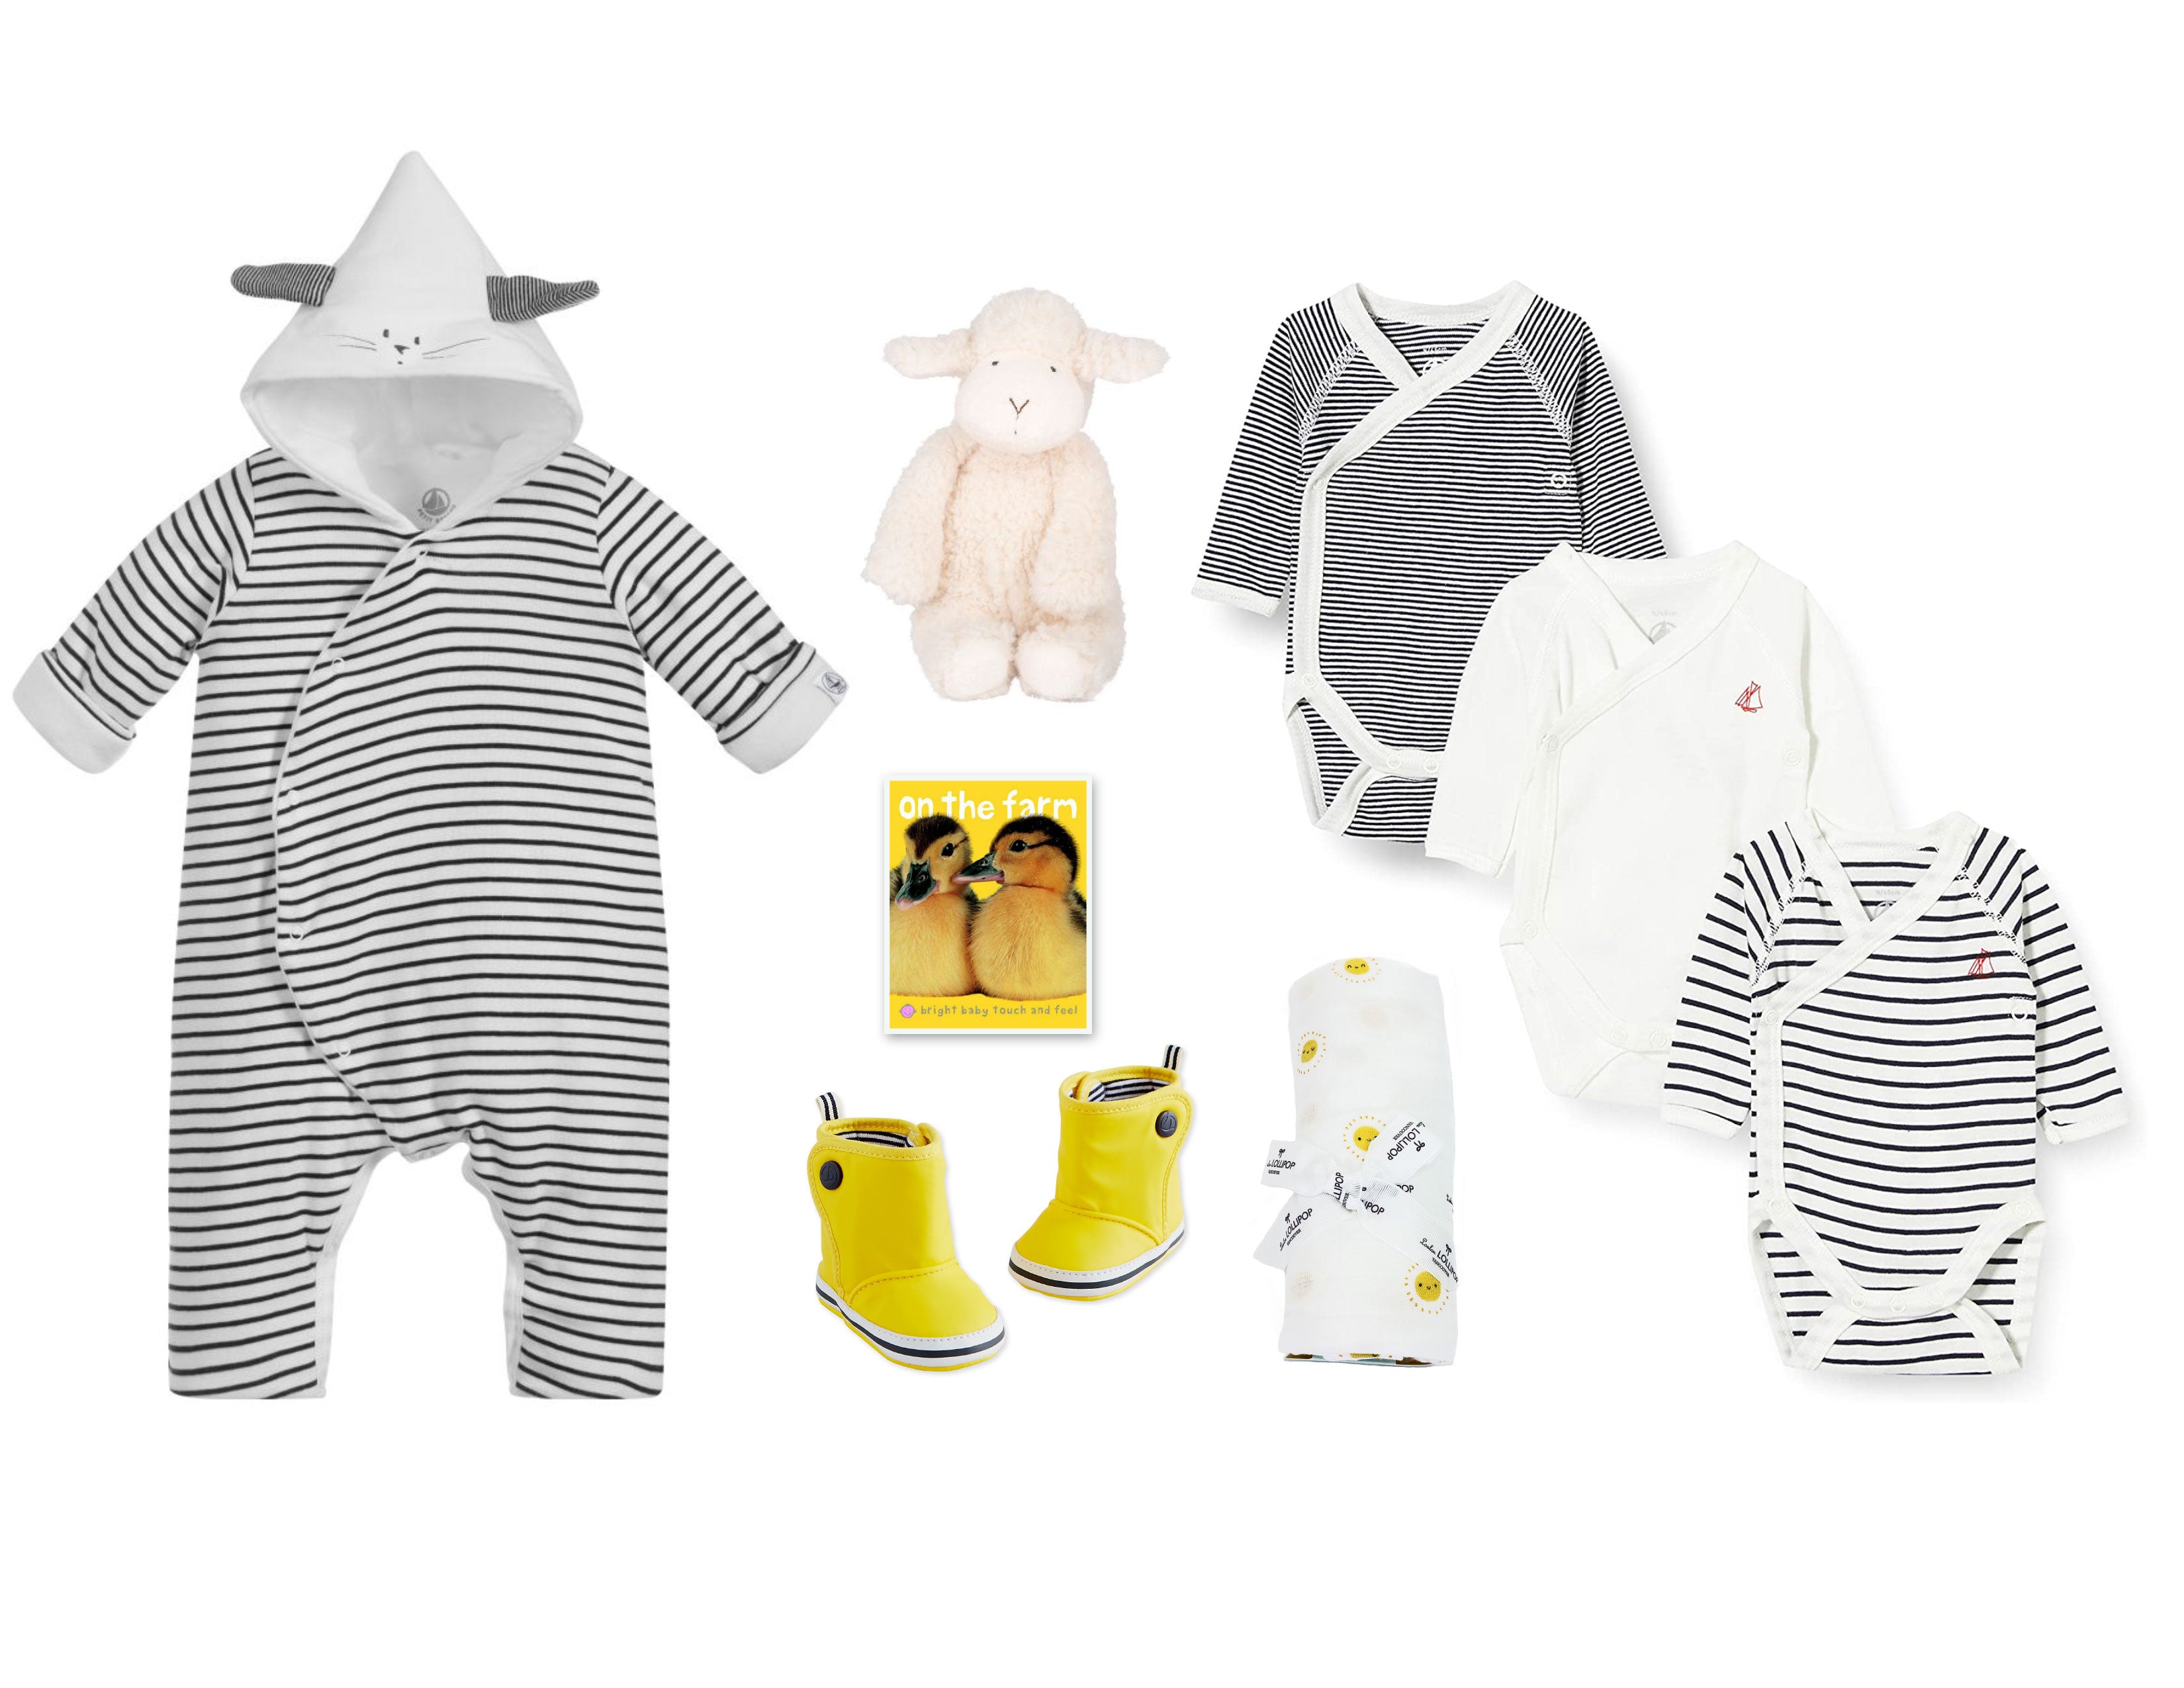 Baby Gift Basket featuring iconic Petit Bateau clothing